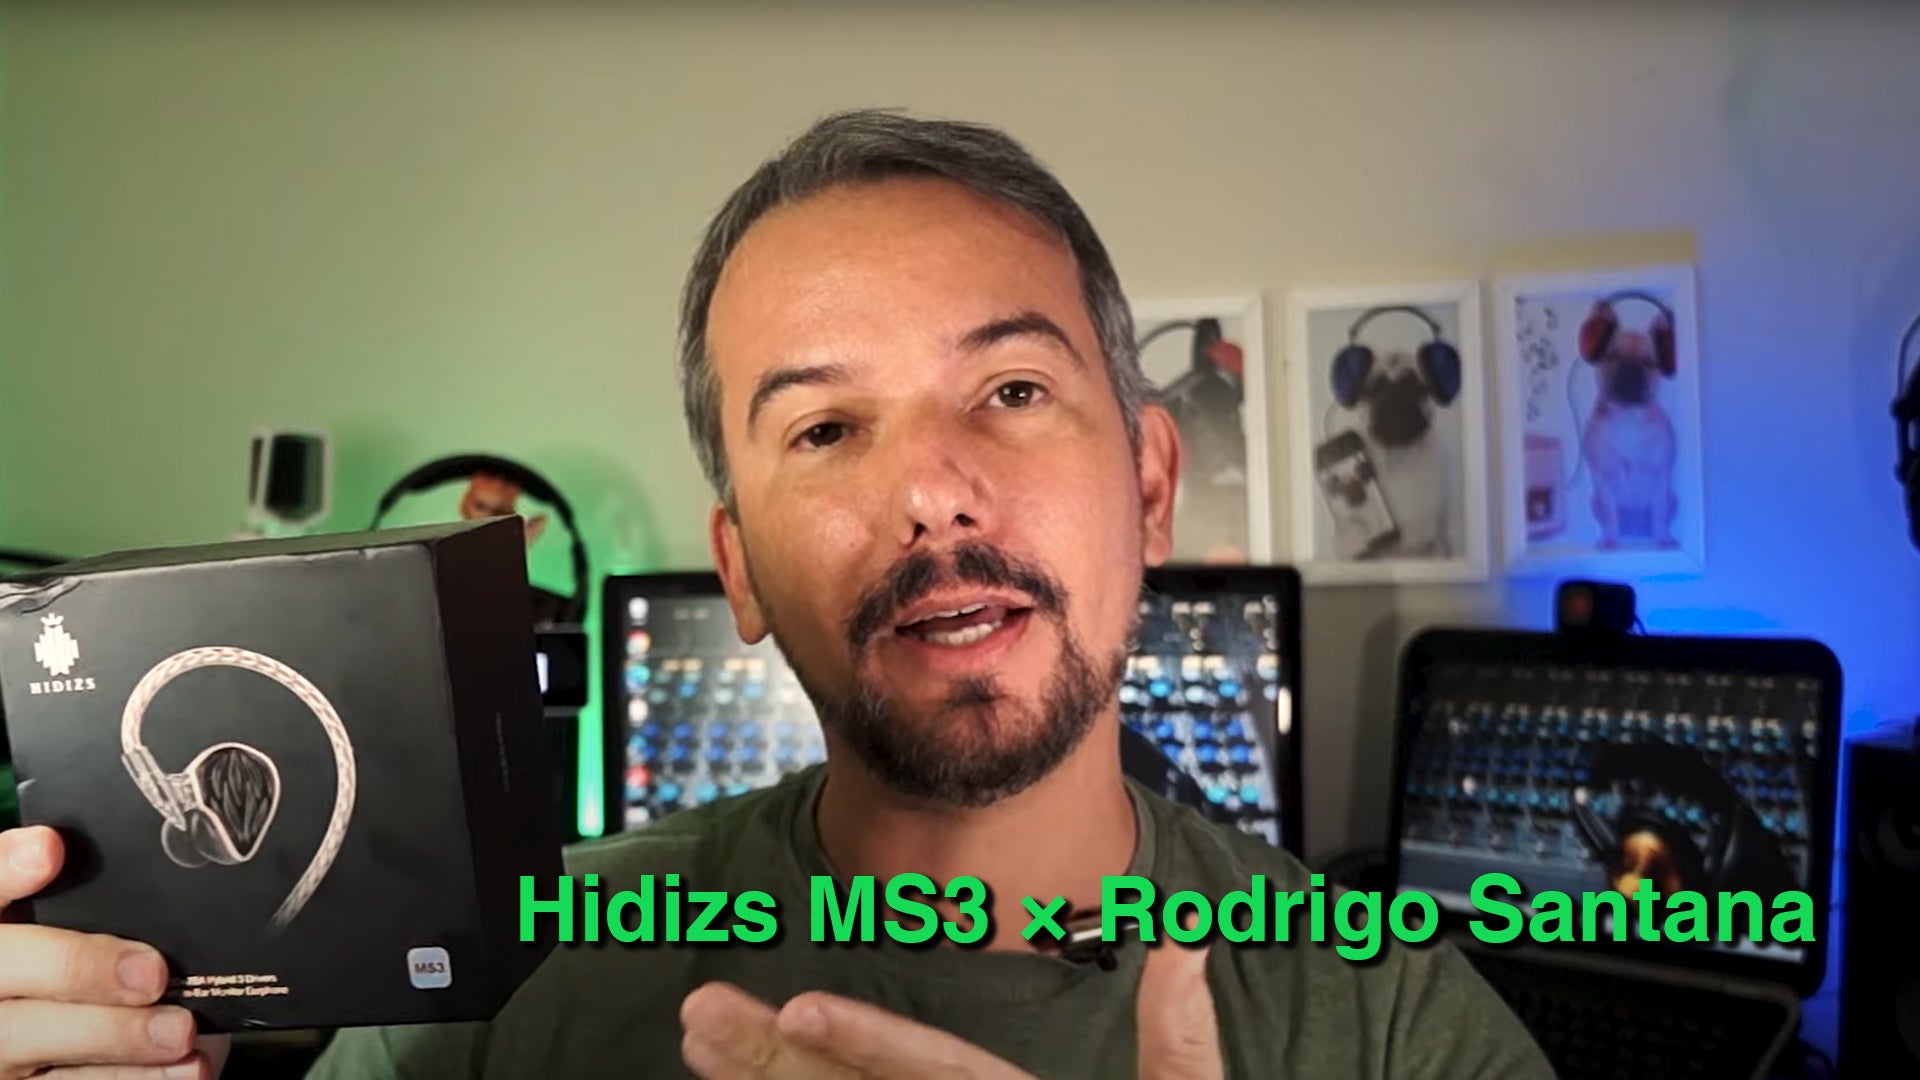 Hidizs MS3 Review - Rodrigo Santana